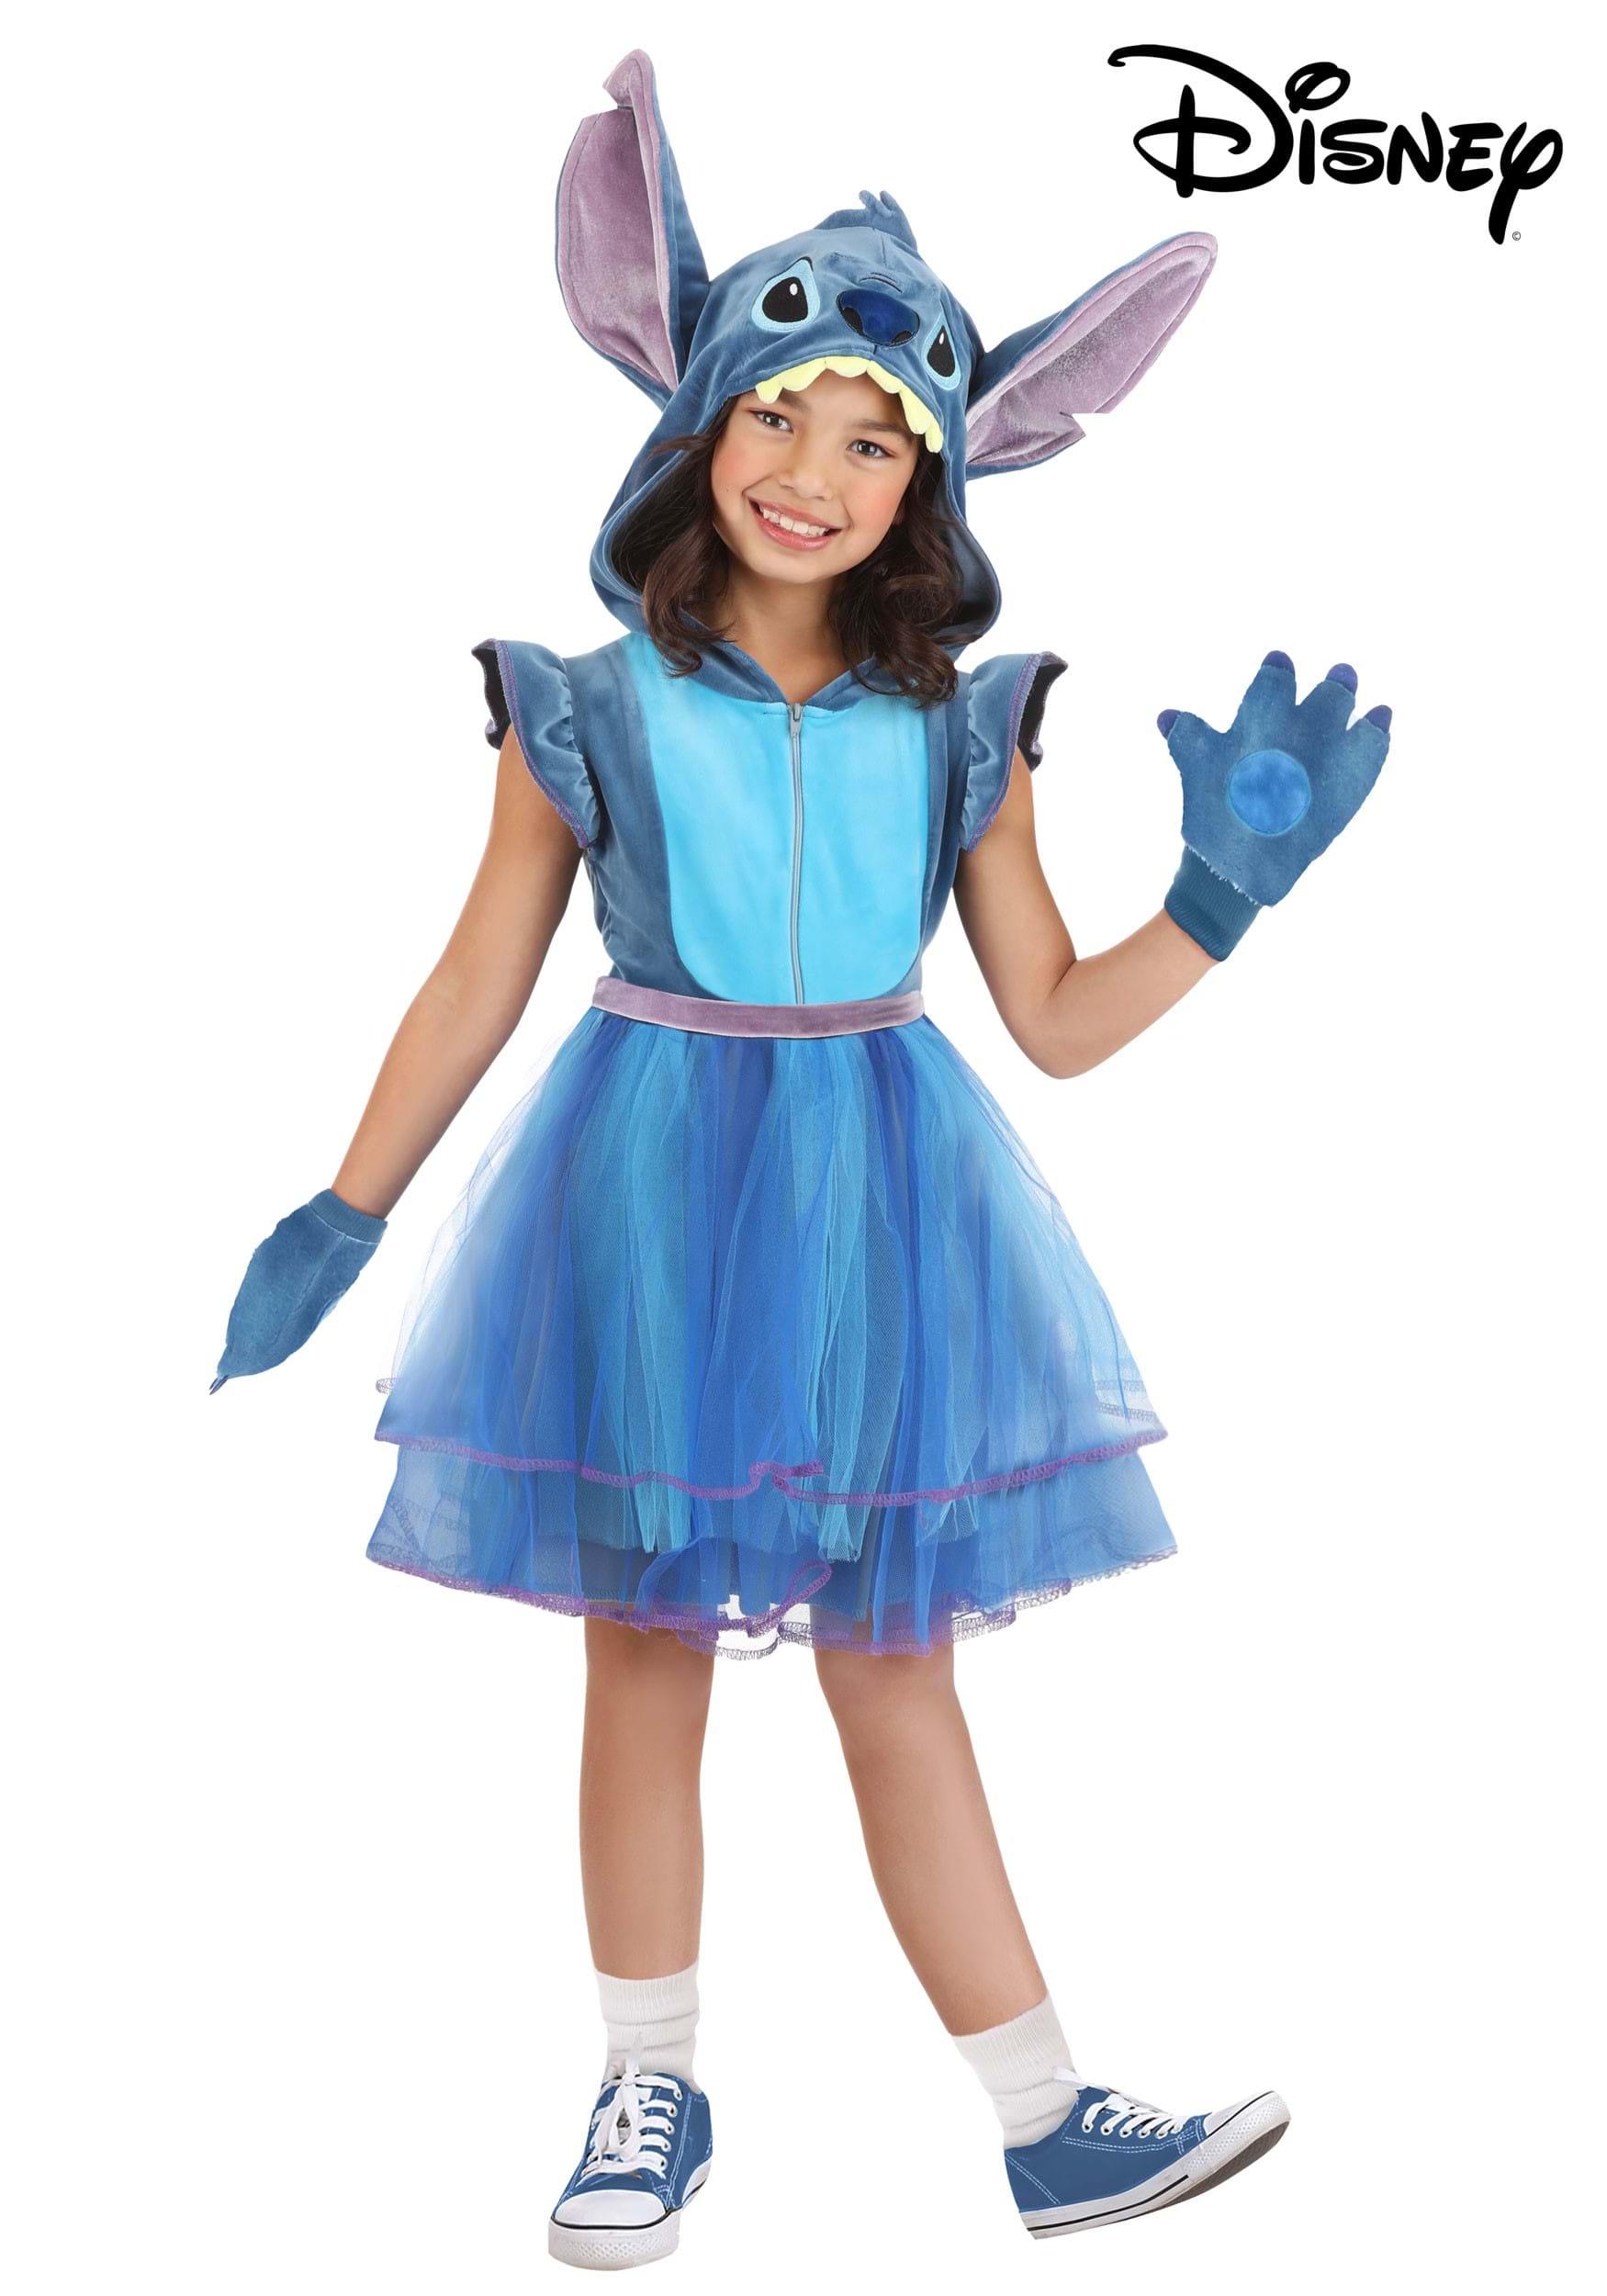 Costume de Stitch pour enfants, Disney Lilo et Stitch